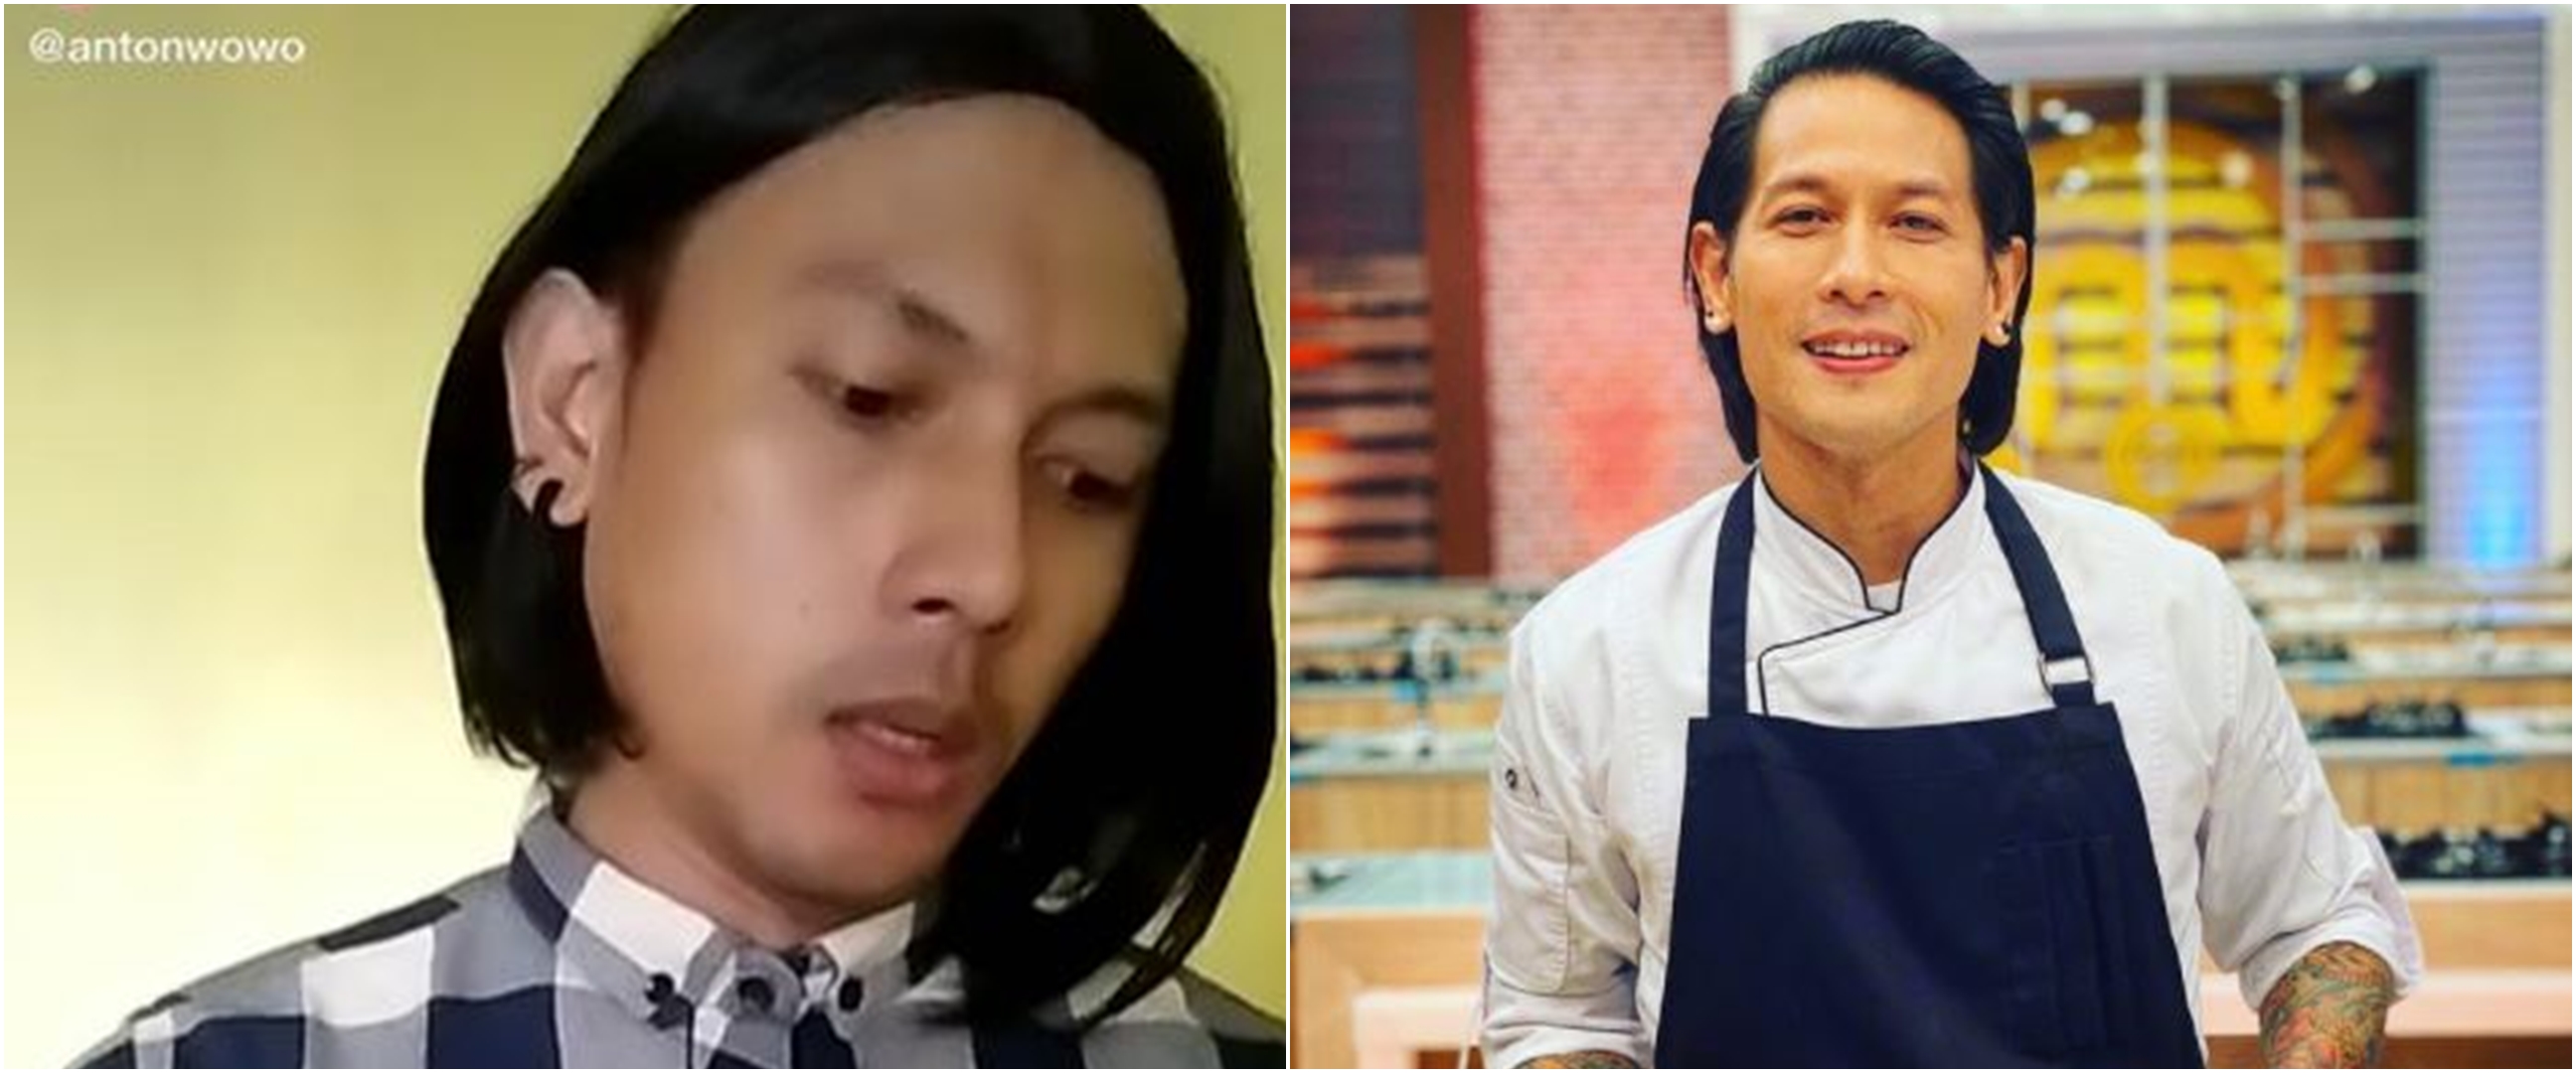 6 Potret Anton Wowo, seleb TikTok yang disebut 'kembaran' Chef Juna